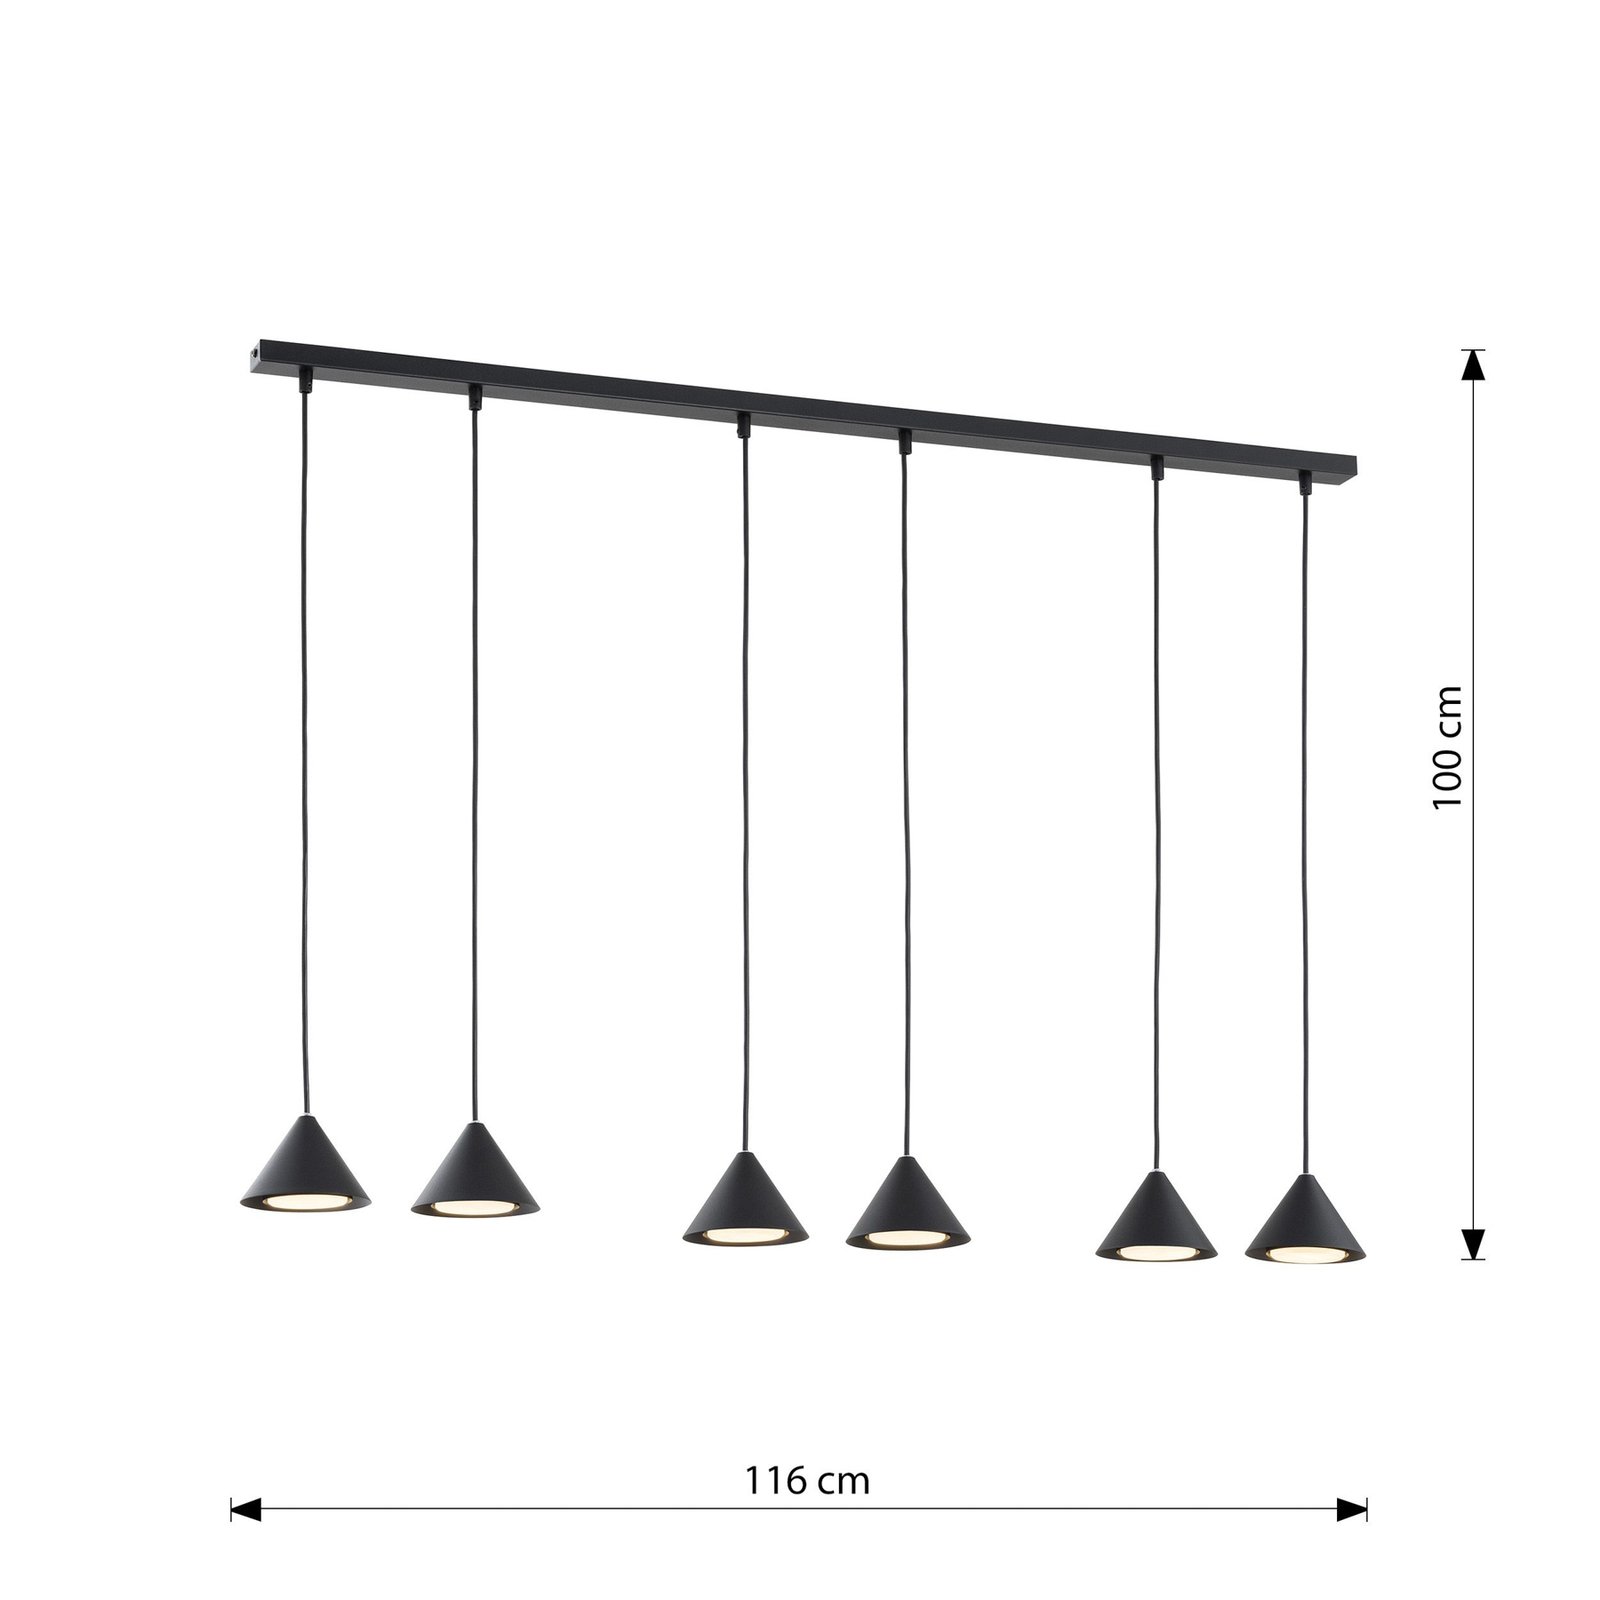 Elit pendant light, 6-bulb, black, metal